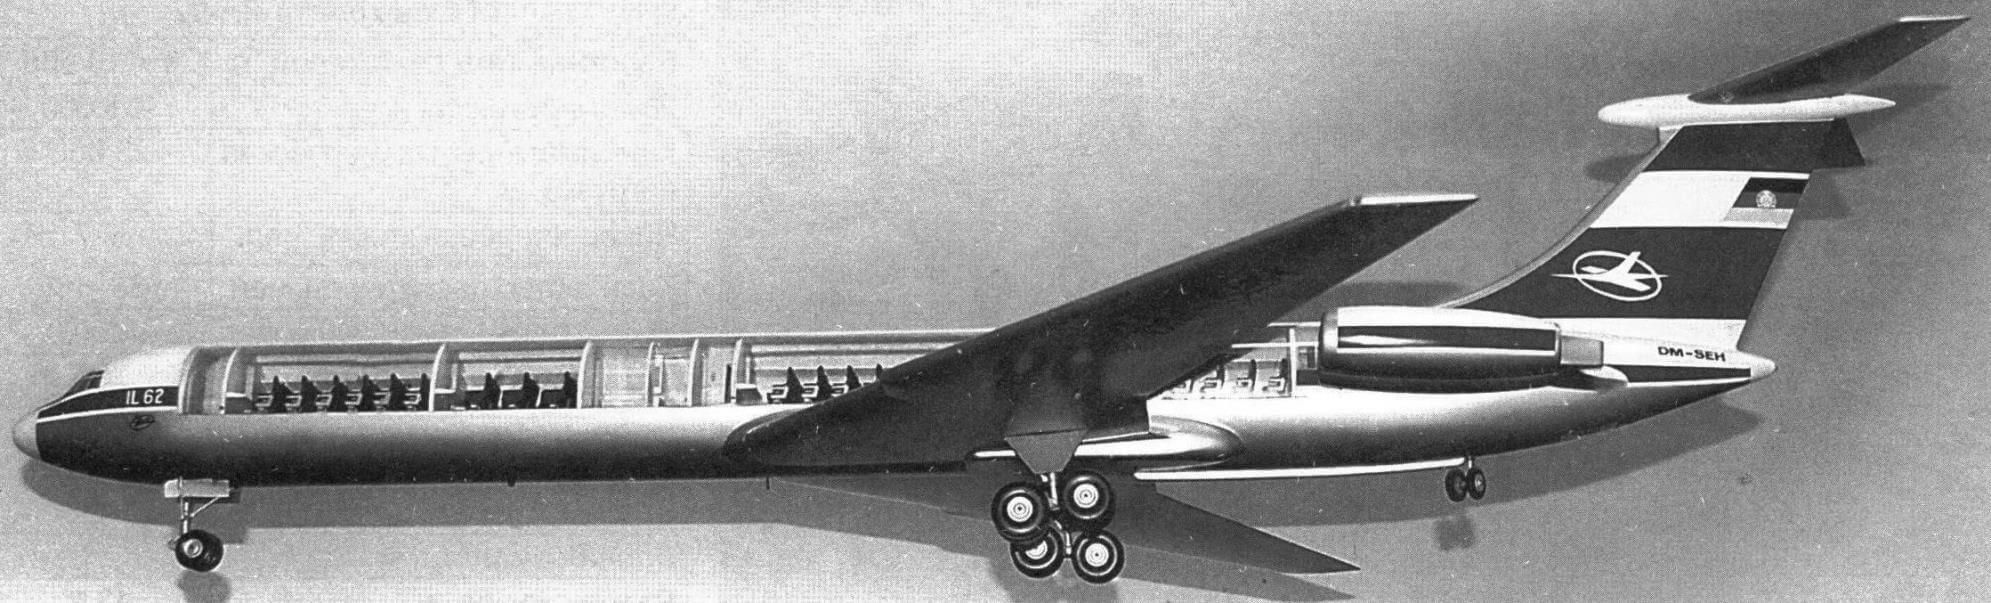 Модель самолета Ил-62 авиакомпании Interflug в Техническом музее Дрездена